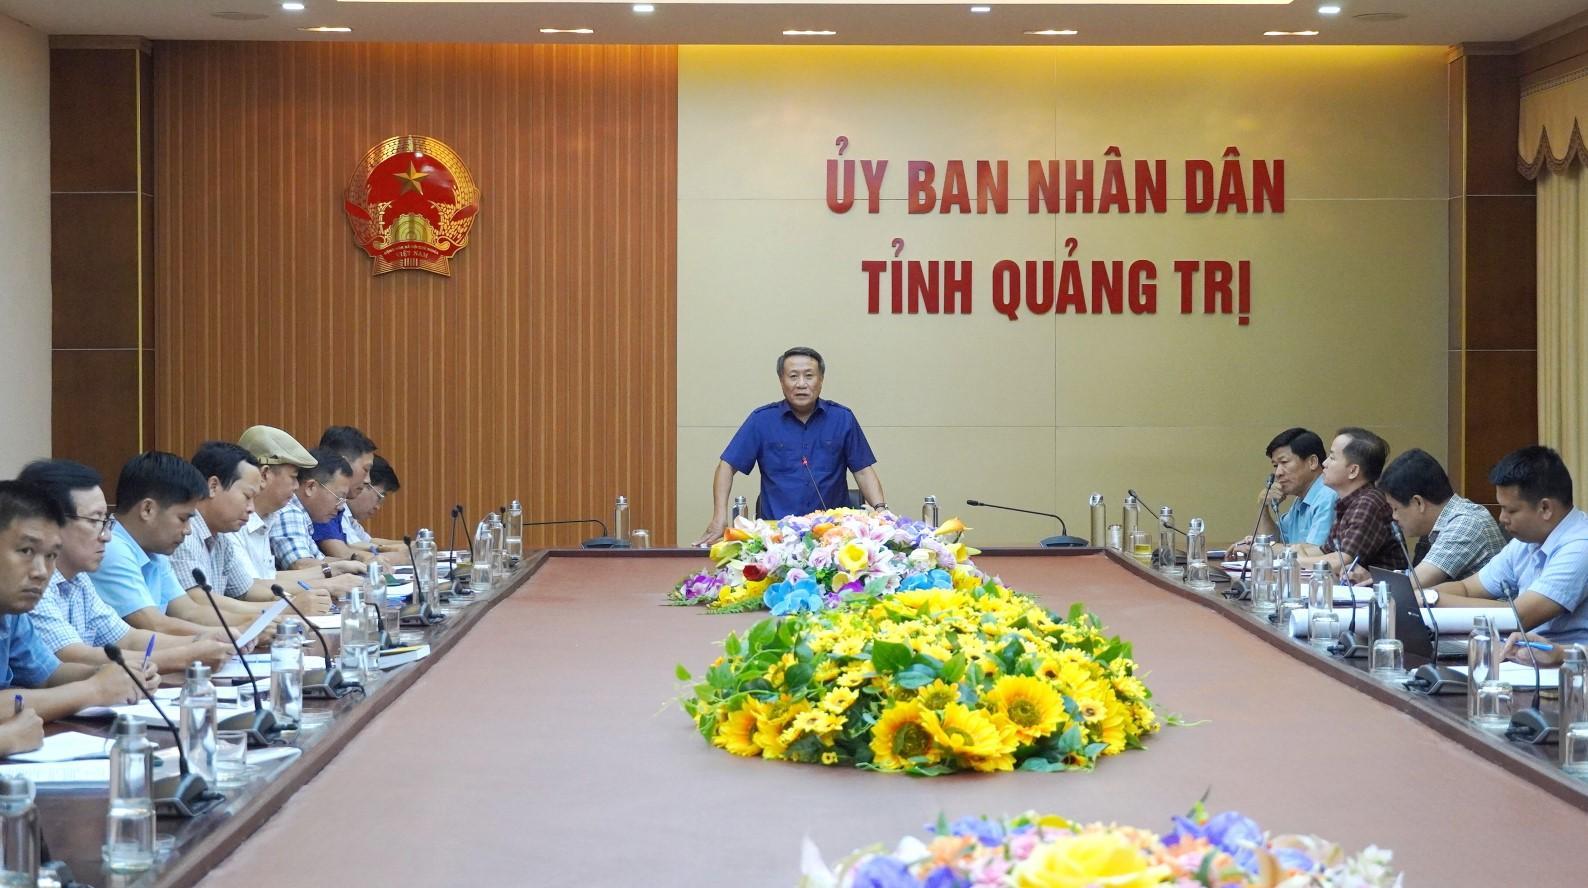 Phó Chủ tịch Thường trực UBND tỉnh Hà Sỹ Đồng chủ trì cuộc họp.